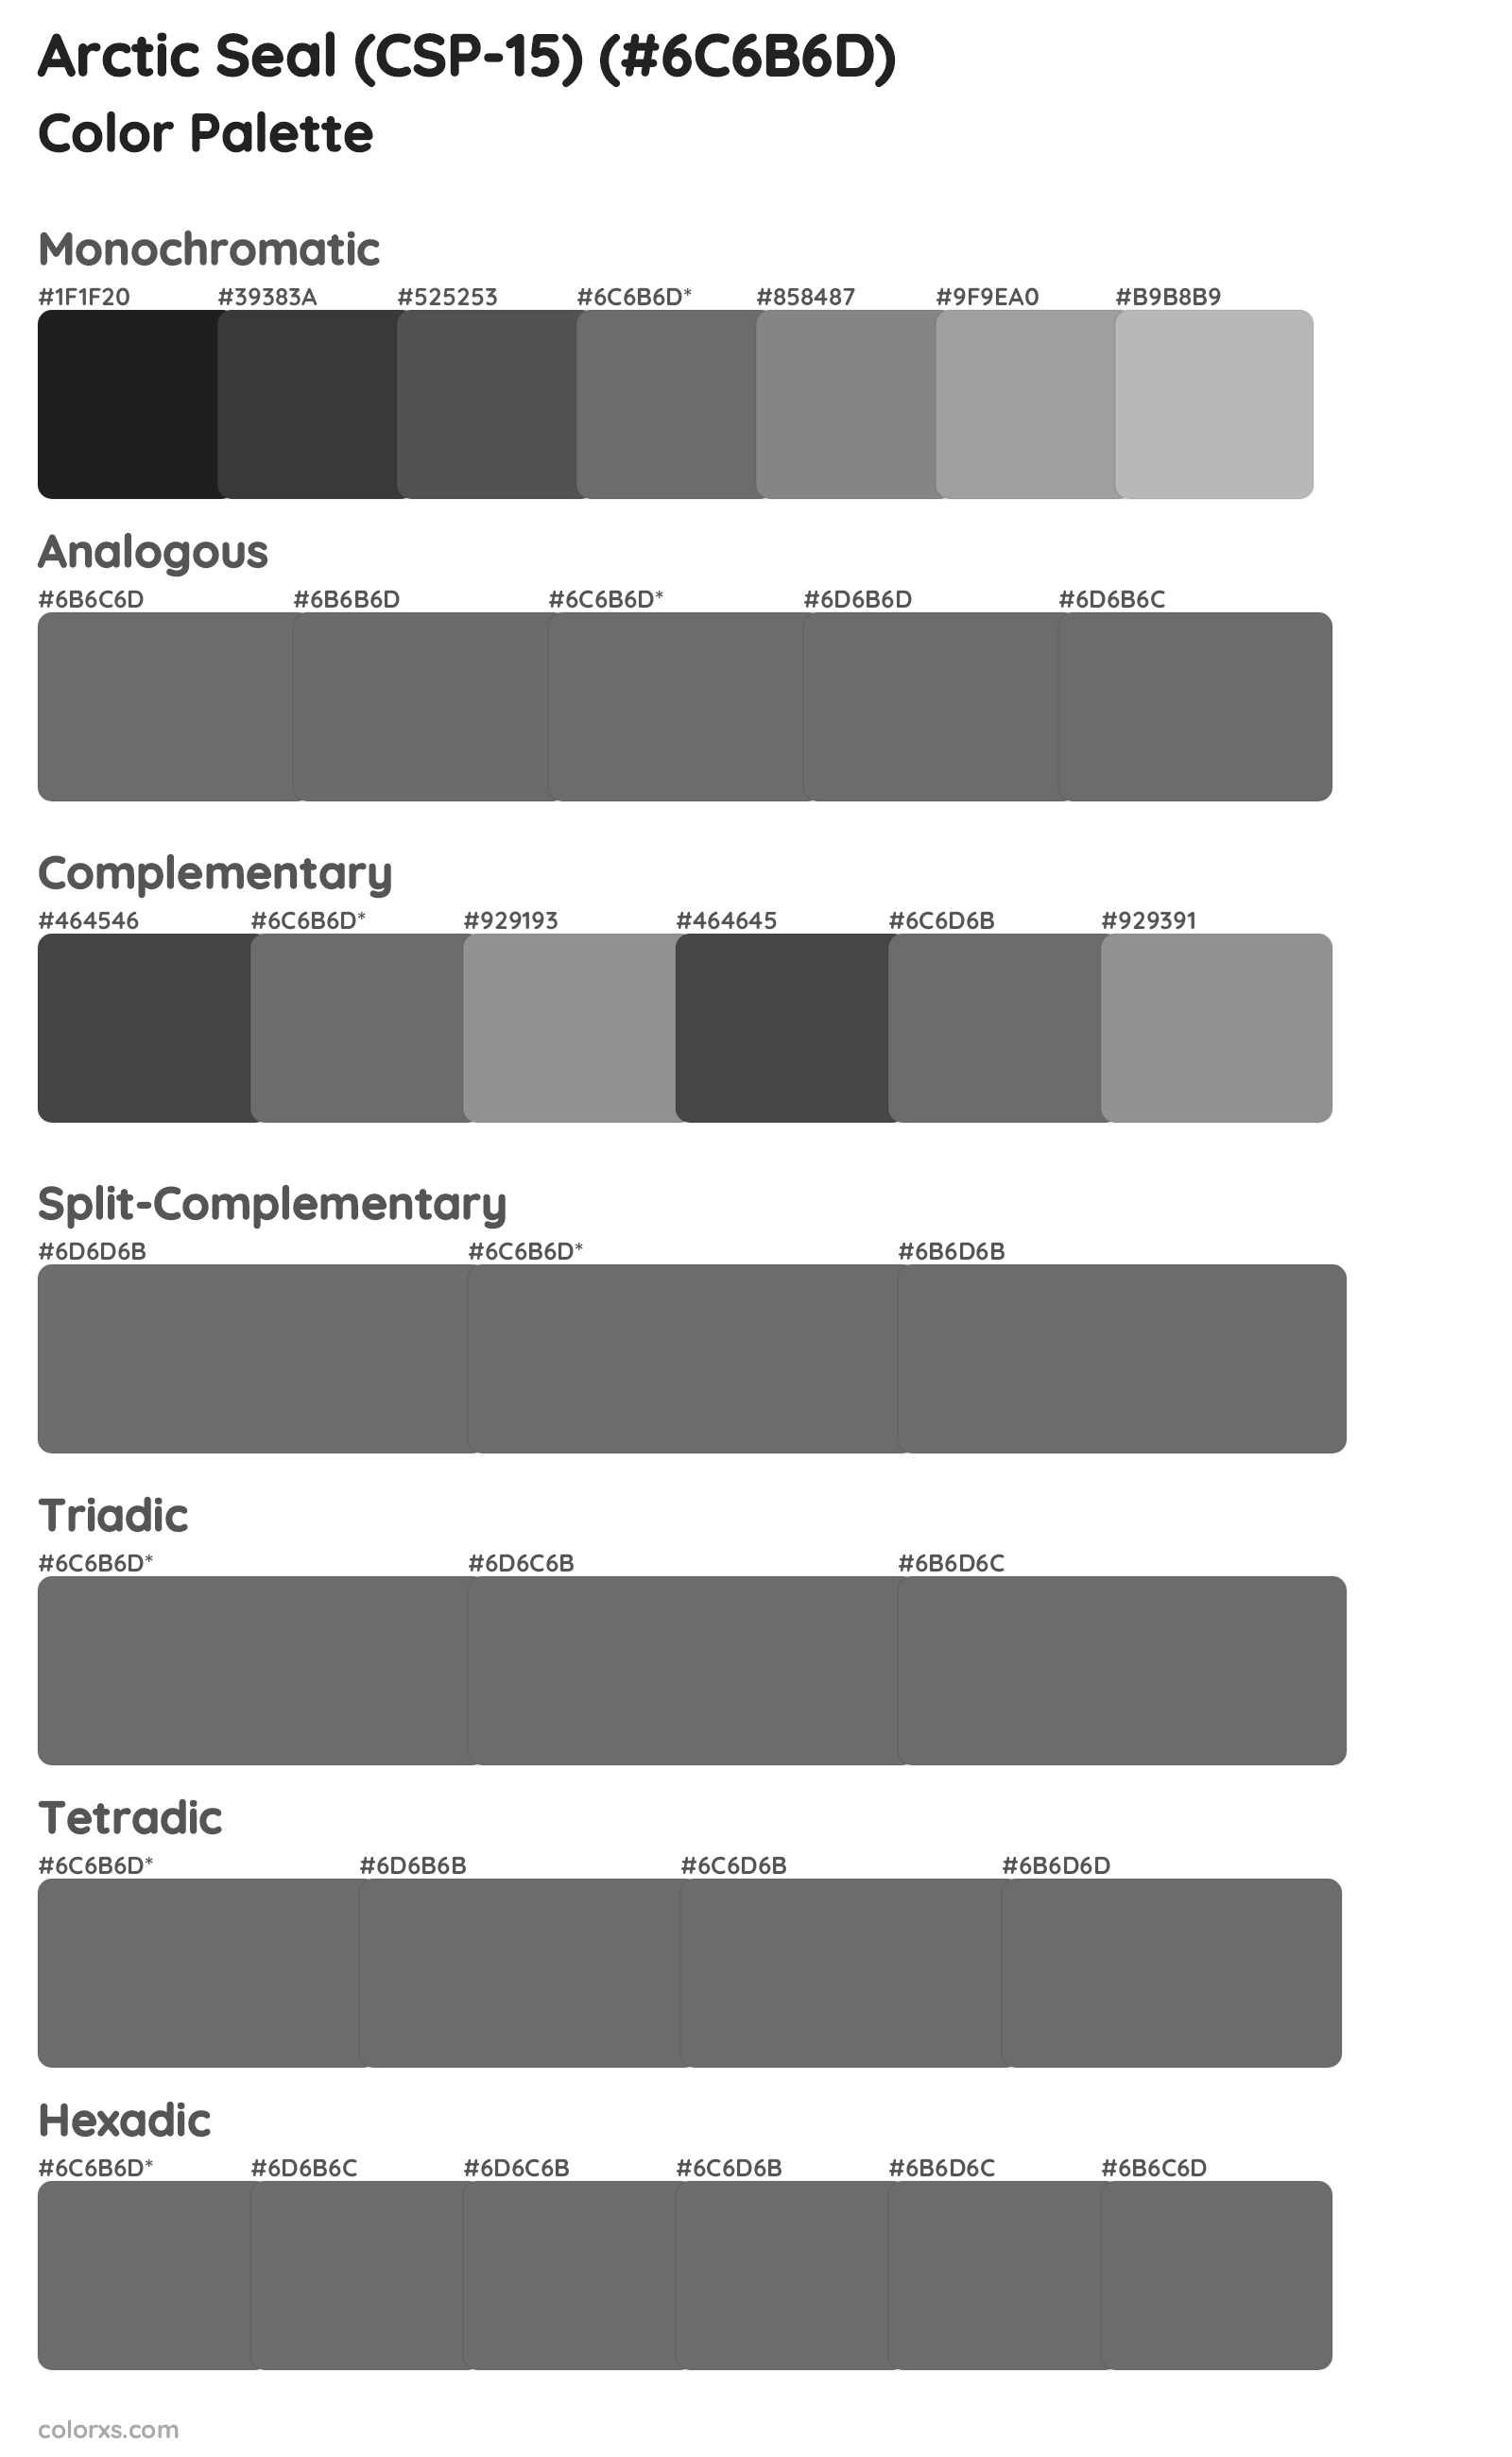 Arctic Seal (CSP-15) Color Scheme Palettes